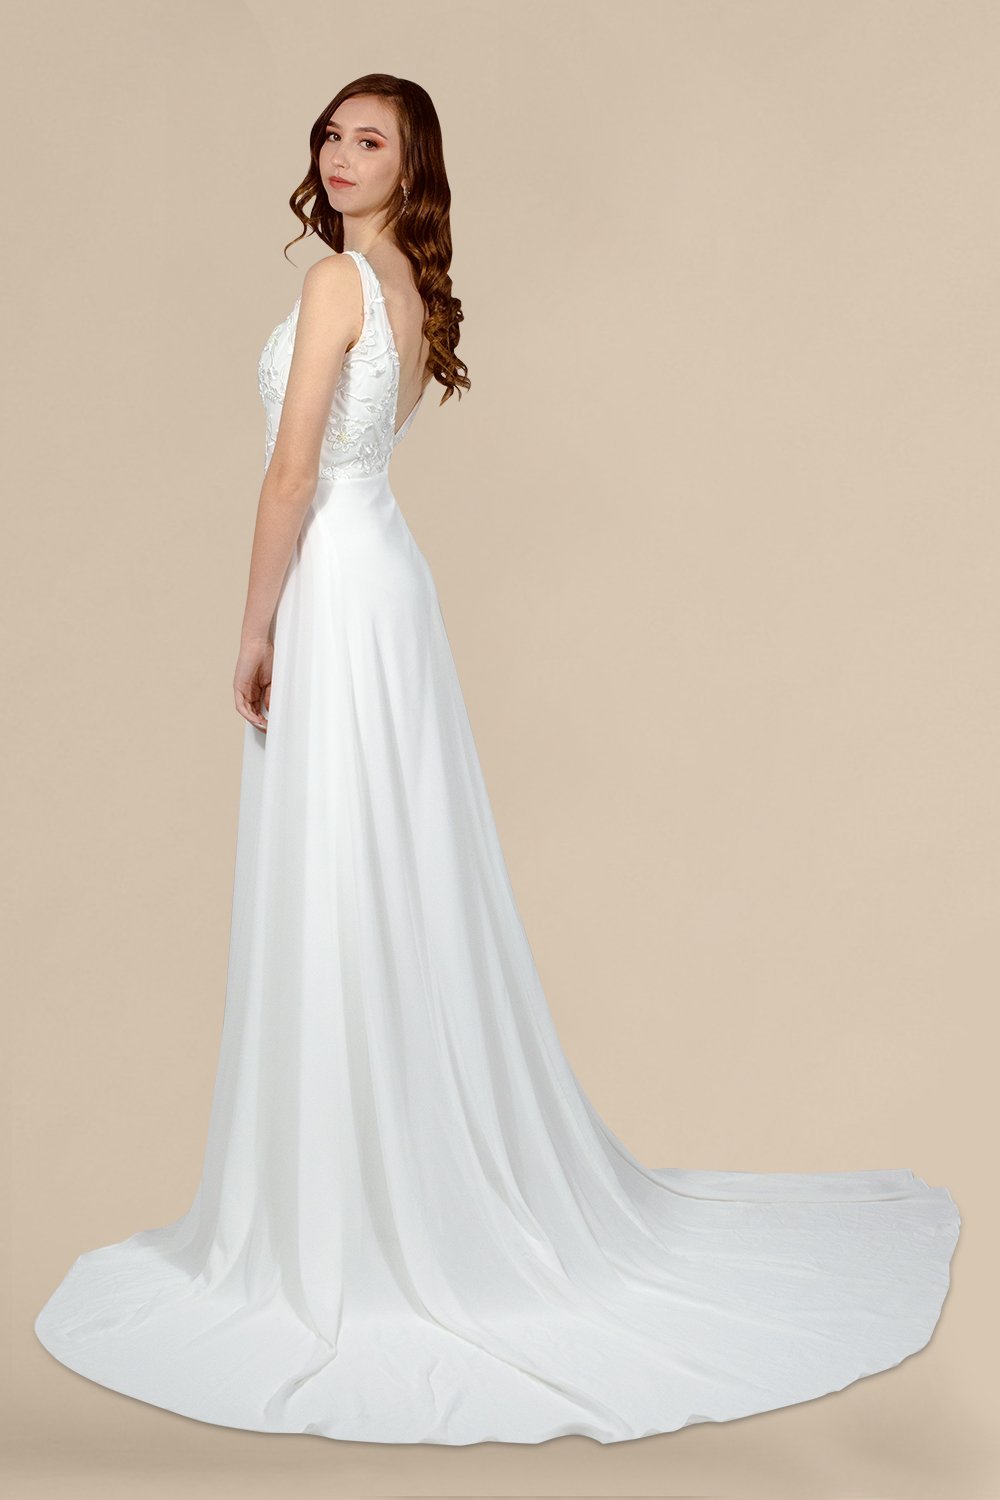 simple minimalist chiffon wedding dresses custom made perth australia envious bridal & formal